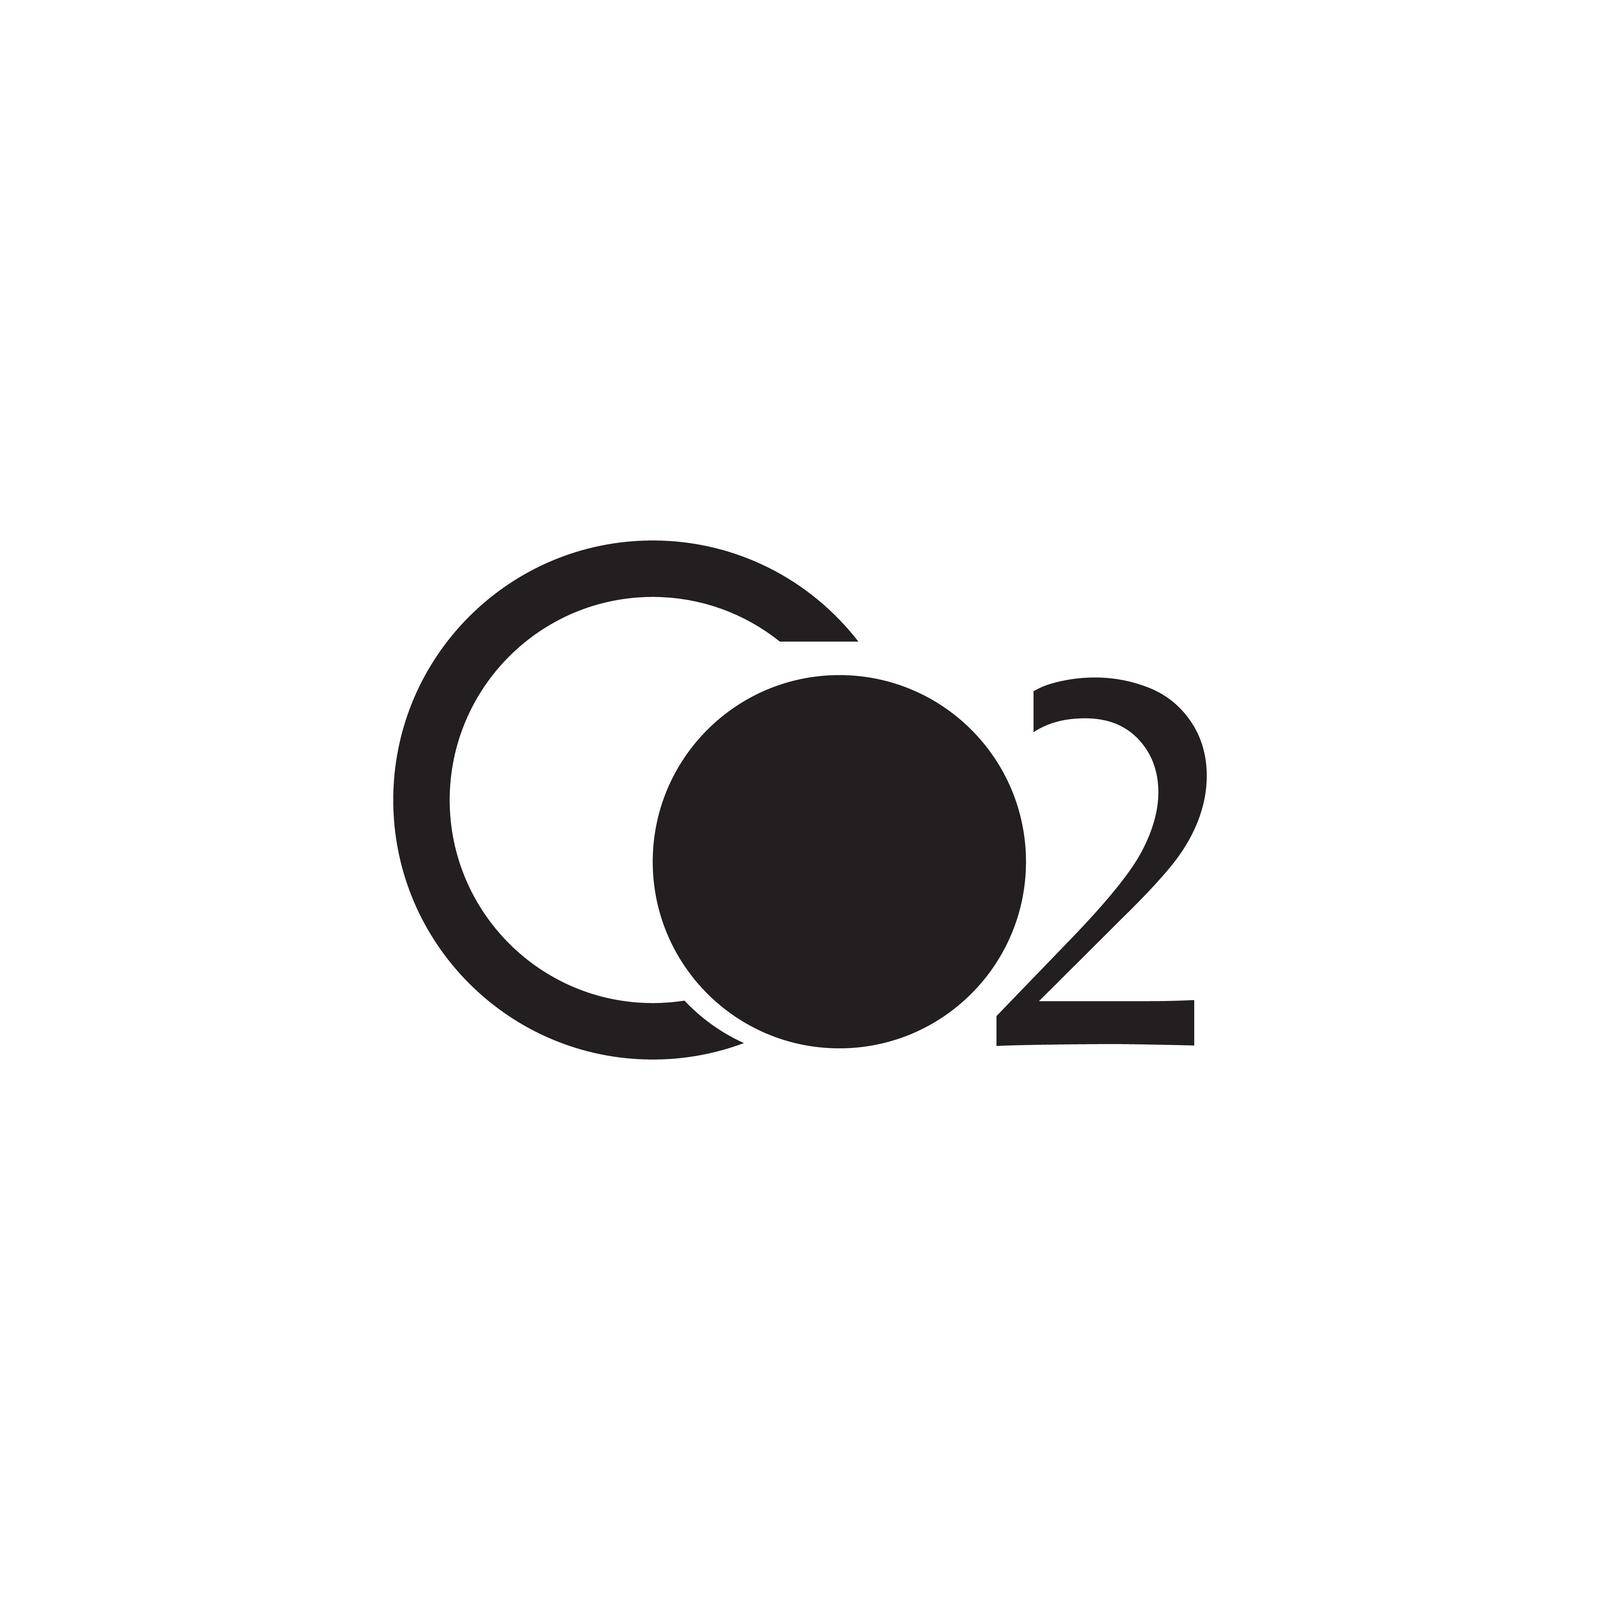 Co2 icon logo vctor design